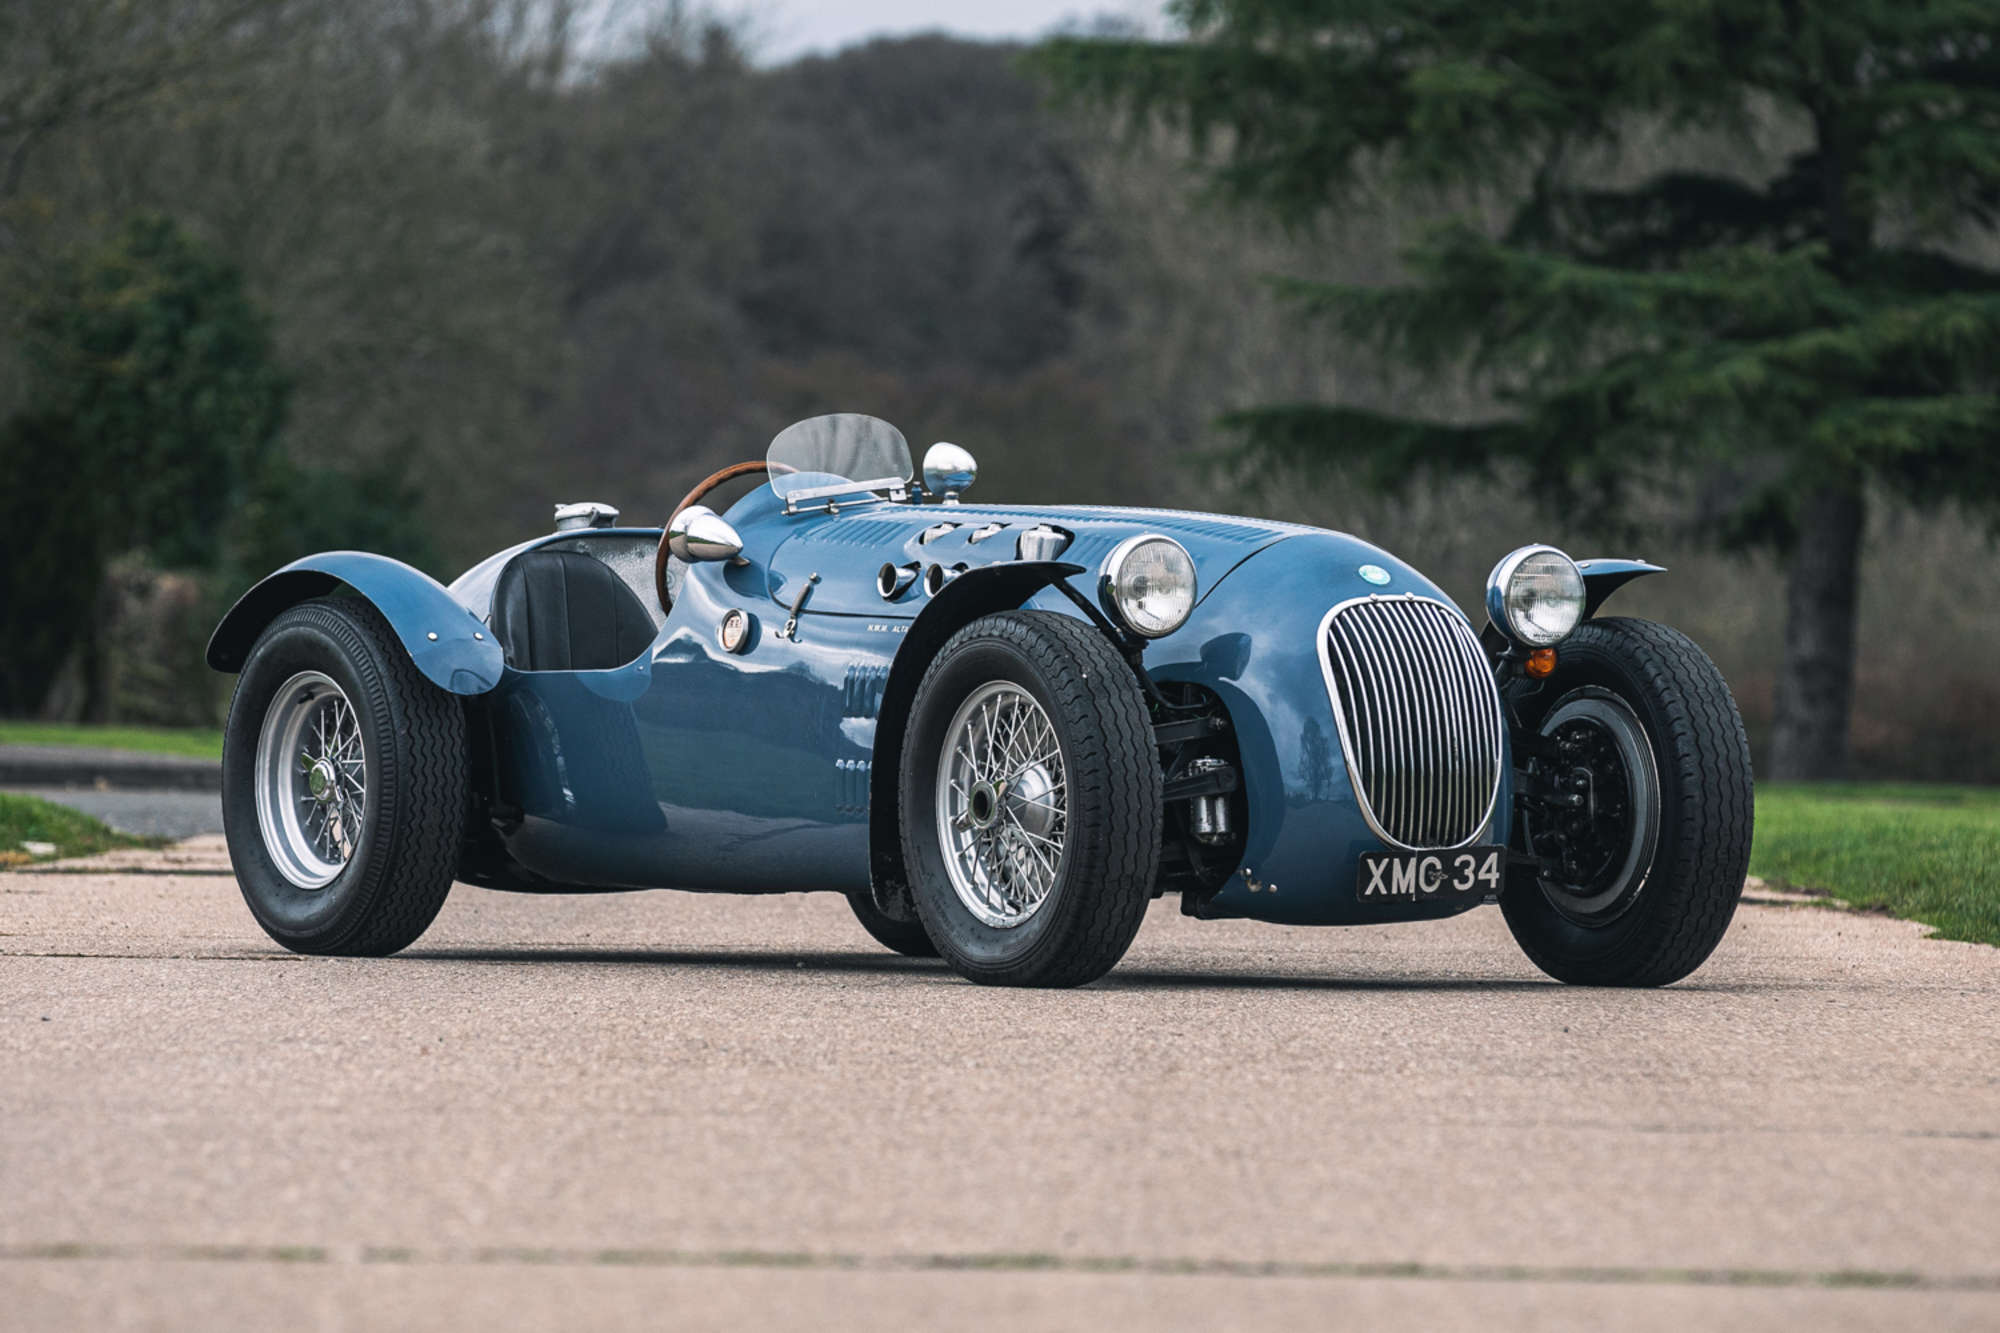 1950 HWM Alta Jaguar